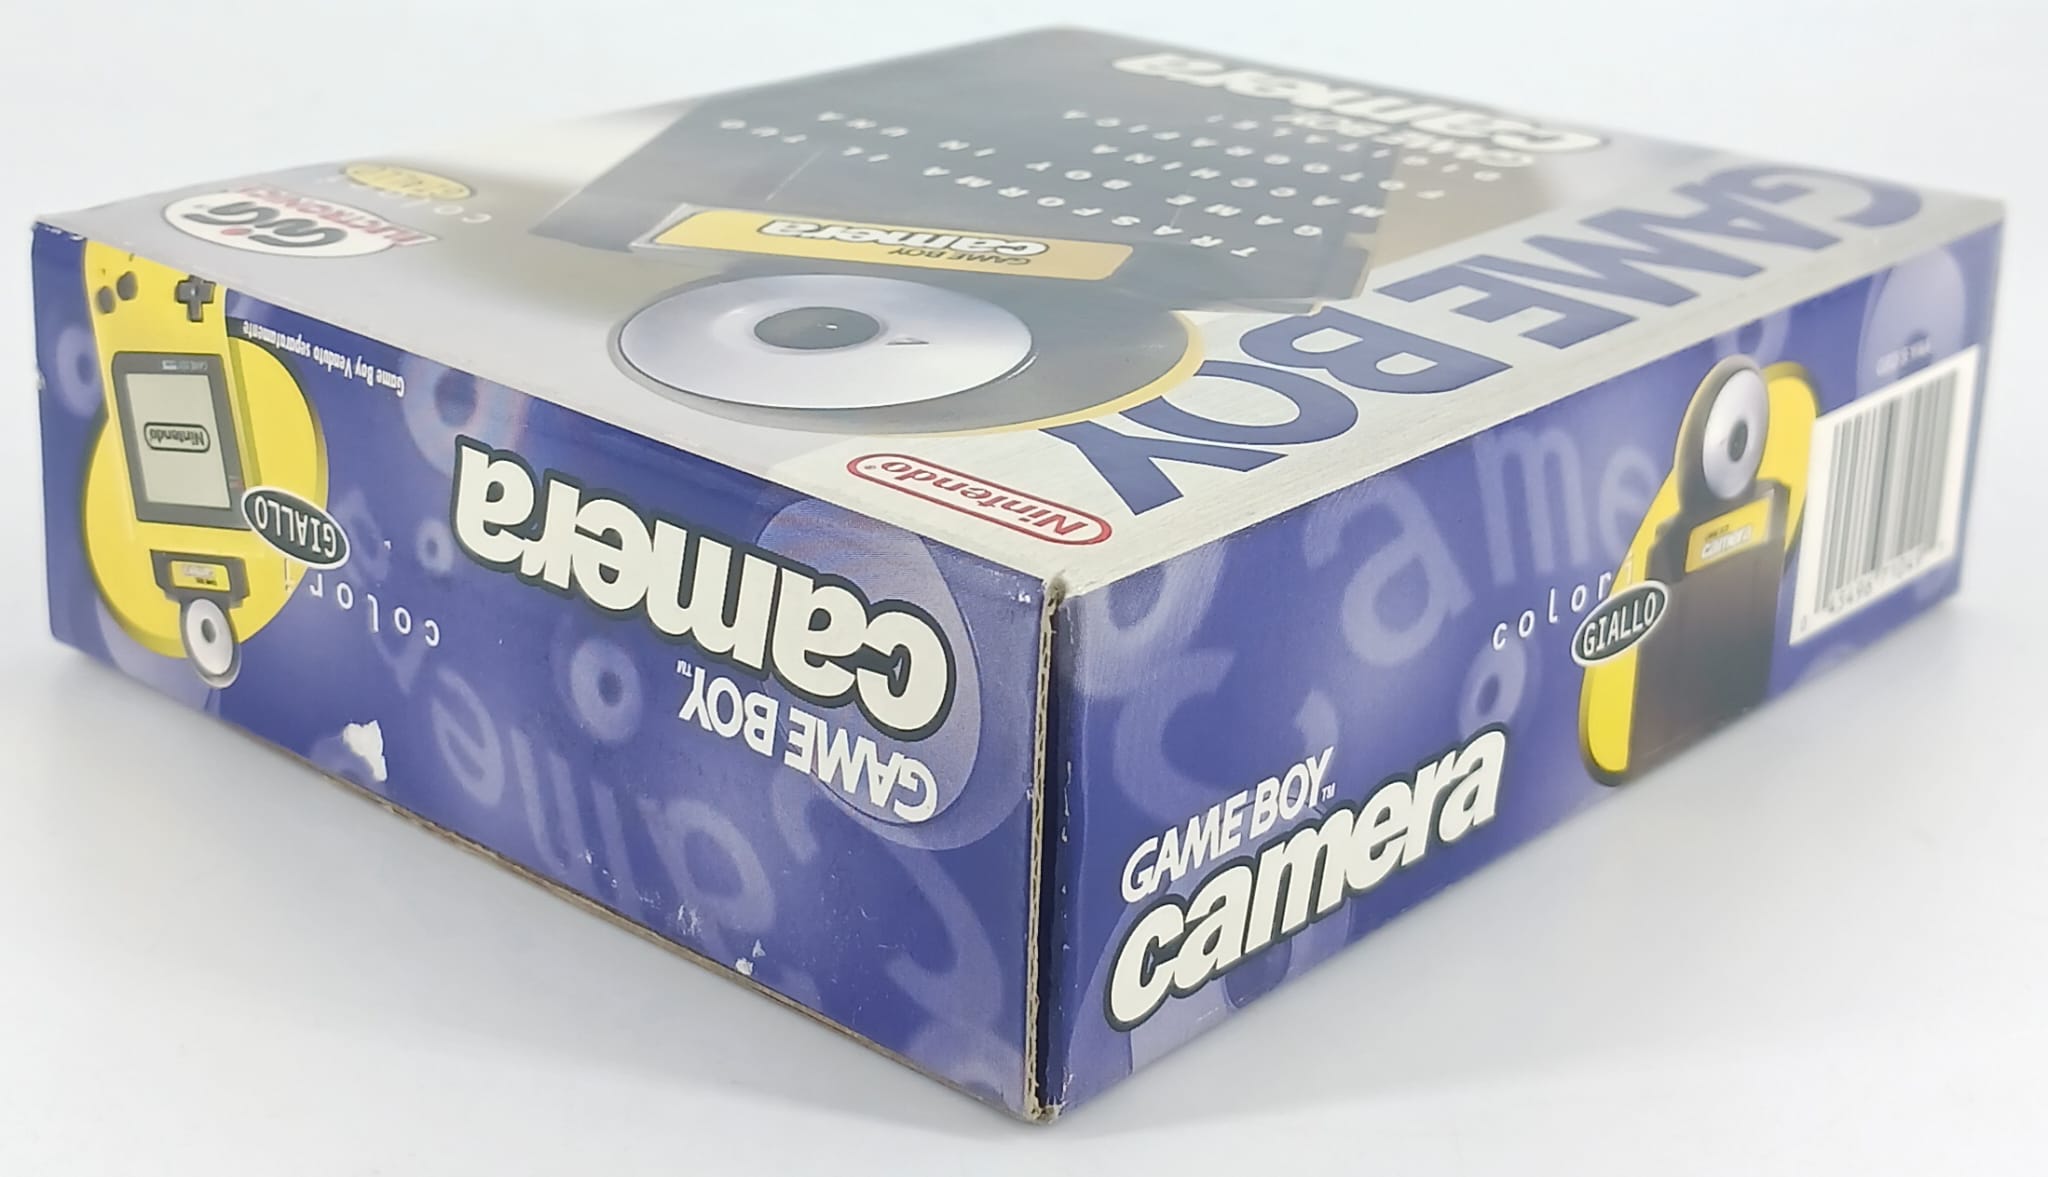 Game Boy camera Giallo